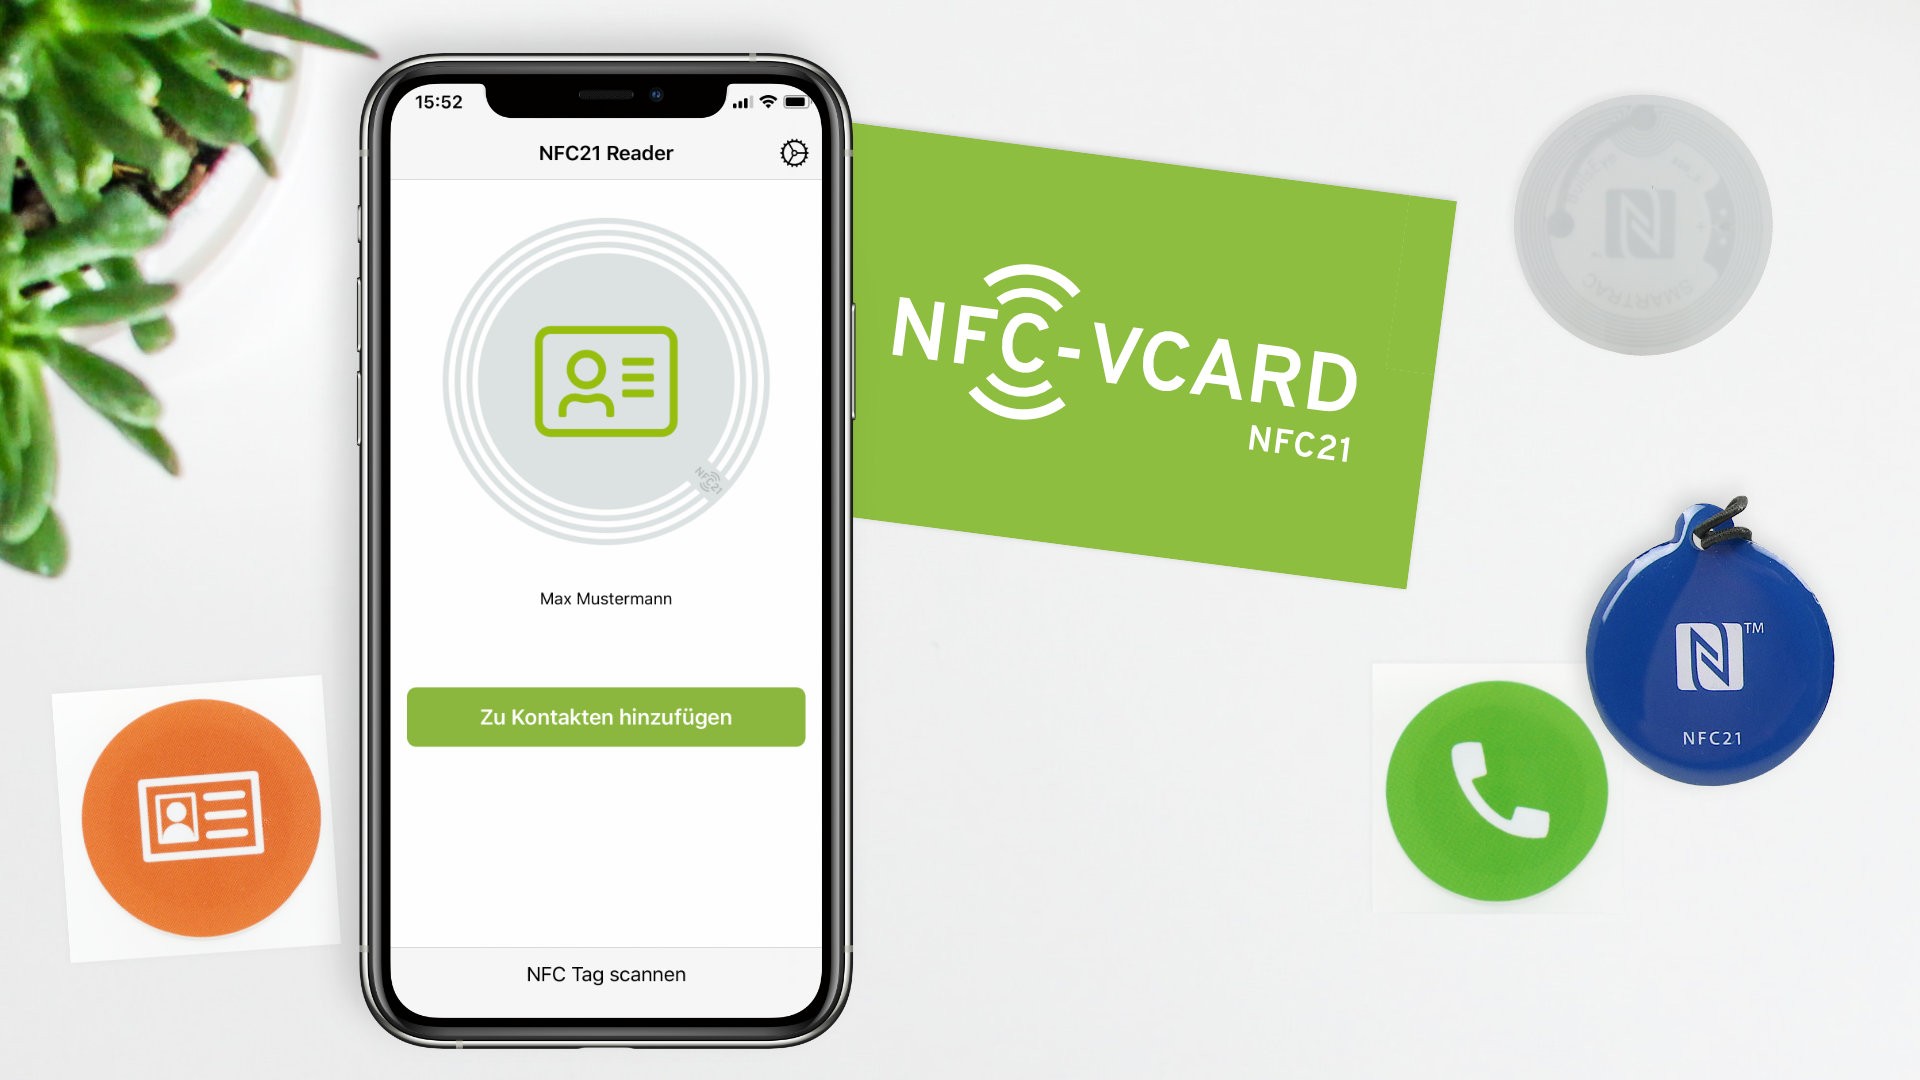 NFC21 Reader – Funktions- und Designupdate unserer iOS App